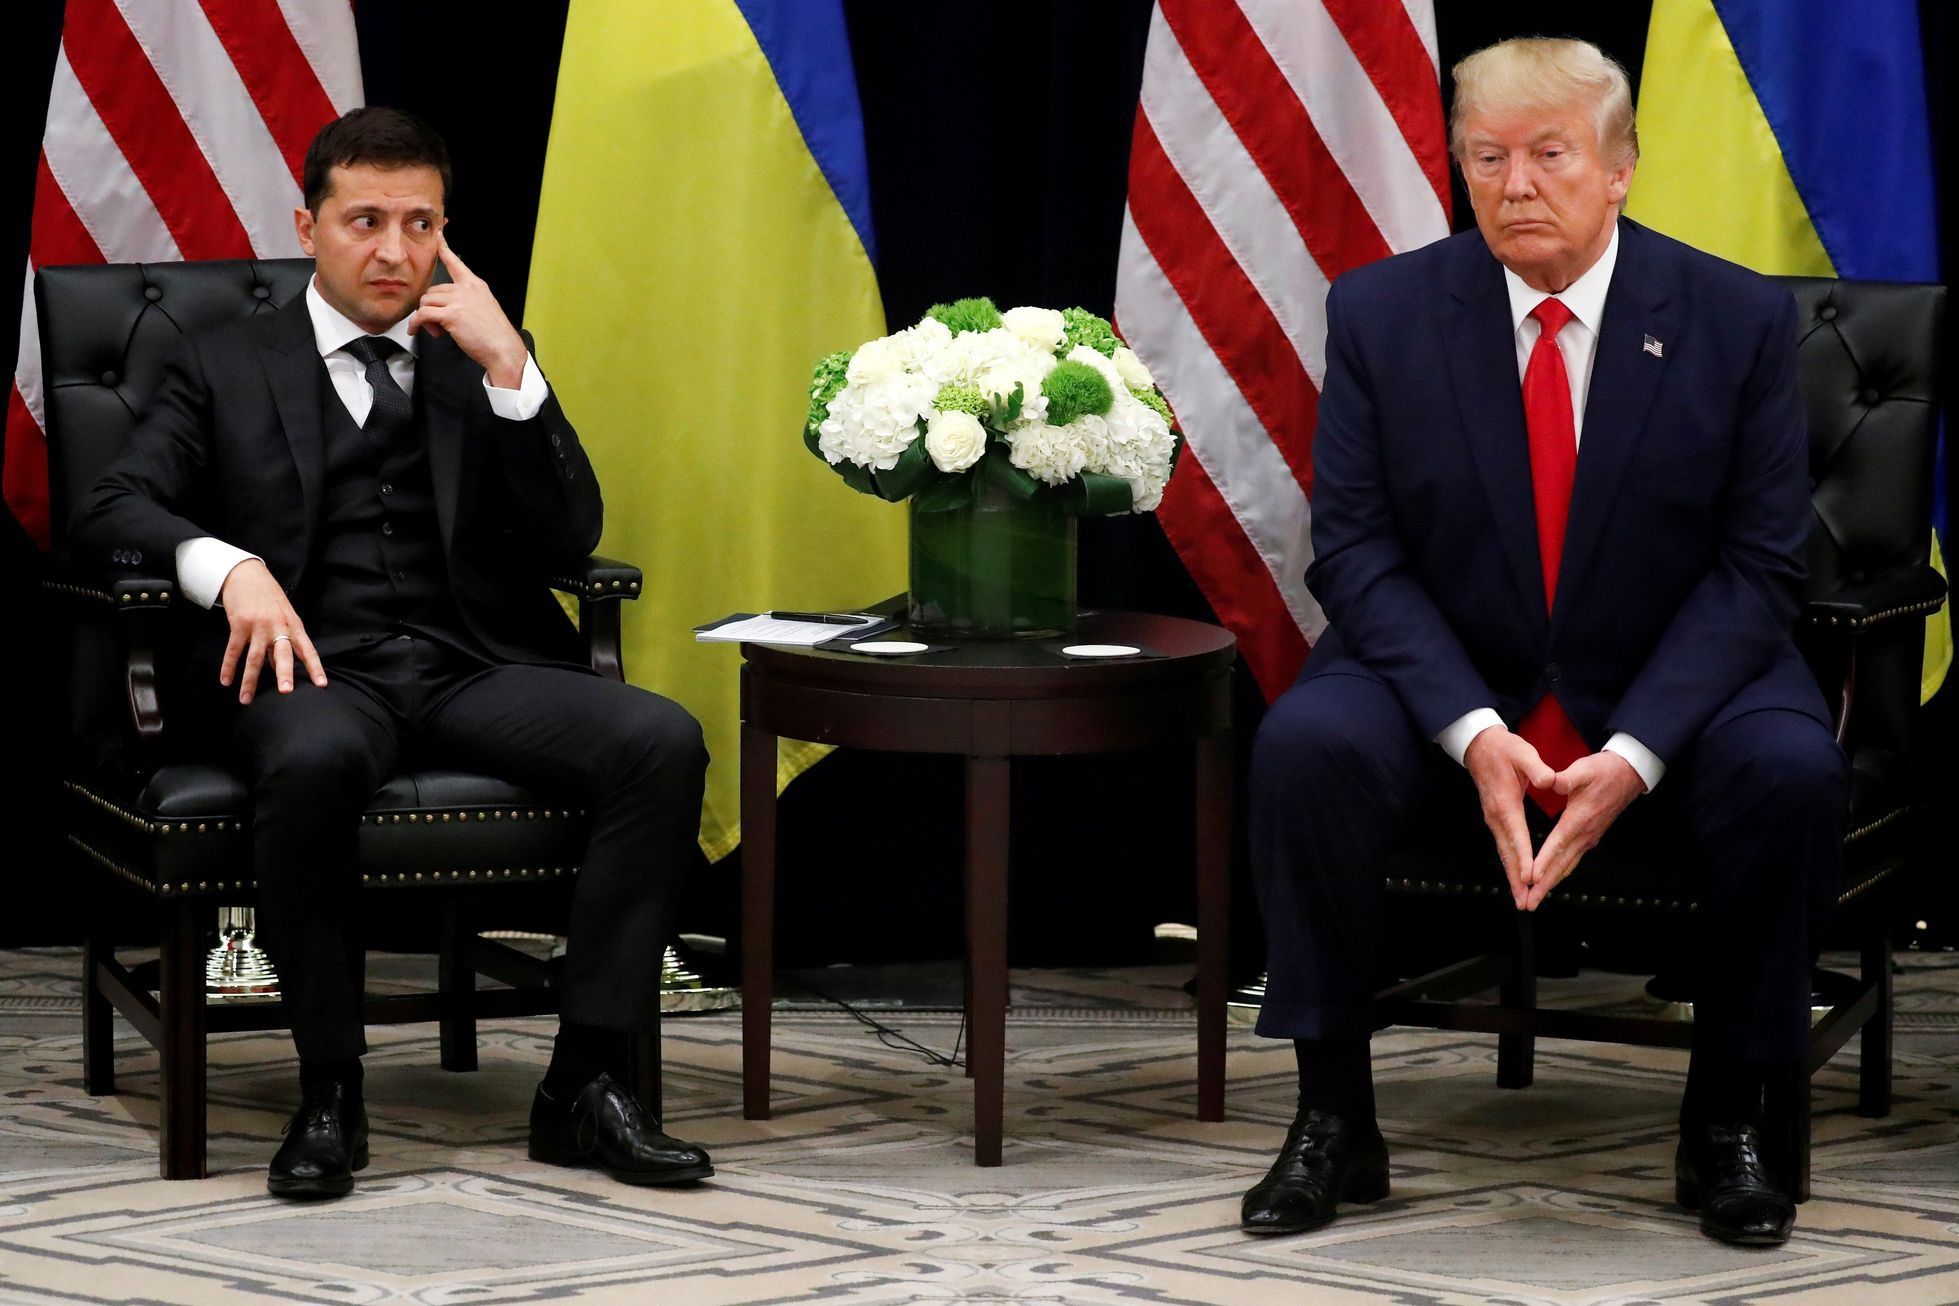 Ukrajinský prezident Volodymyr Zelenskyj a jeho americký protějšek Donald Trump.